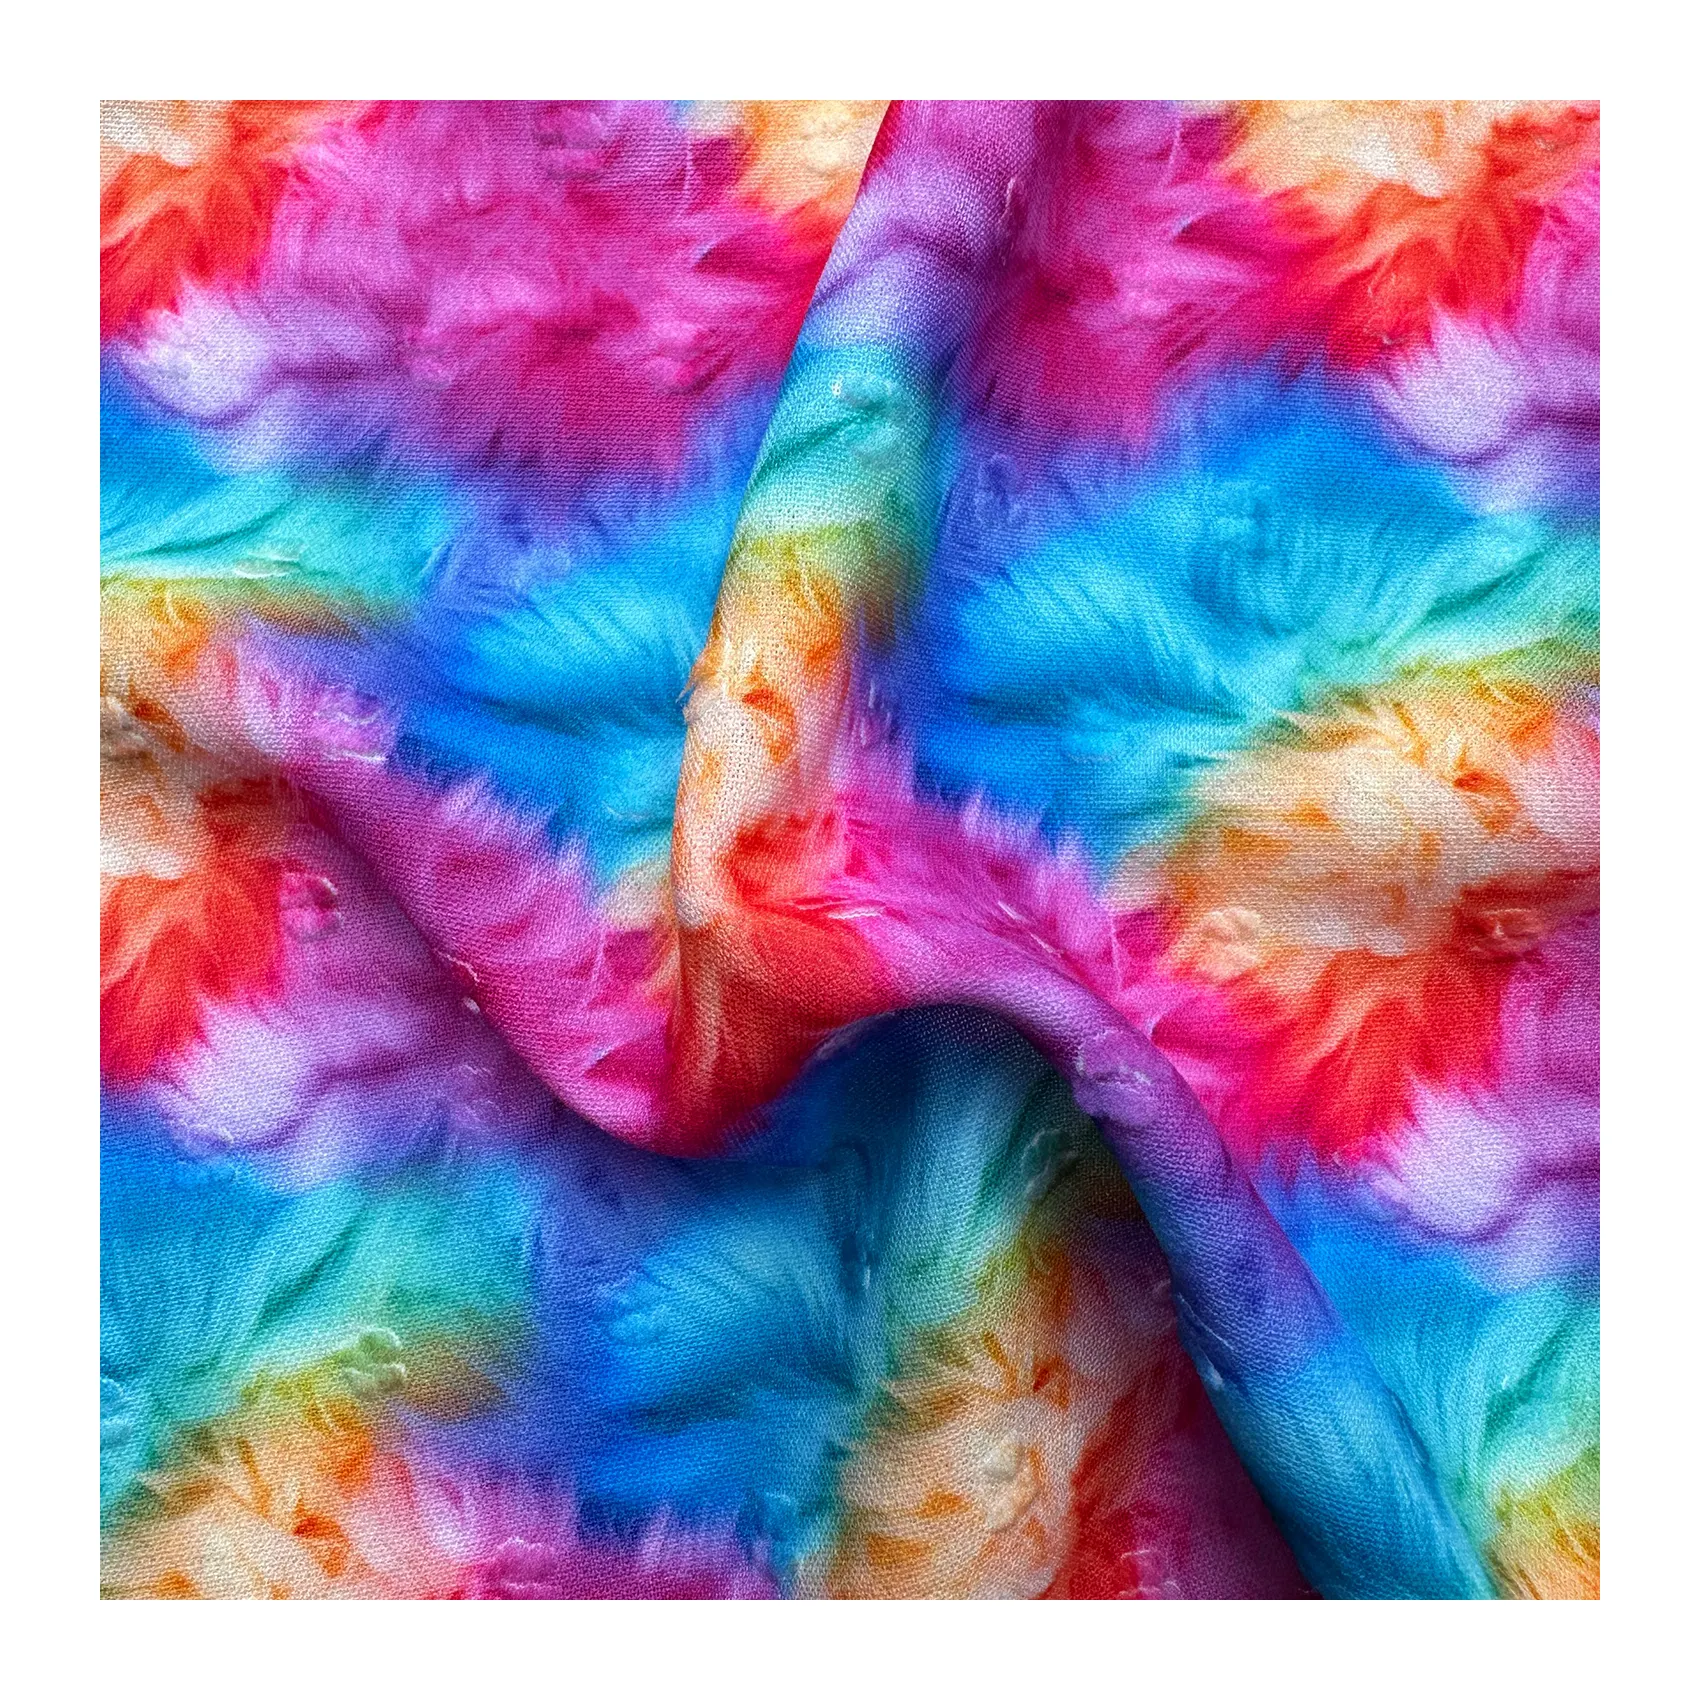 स्प्रिंग समर शर्ट ड्रेस के लिए कस्टम डिजिटल सब्लिमेशन मुद्रित से डॉट फैब्रिक